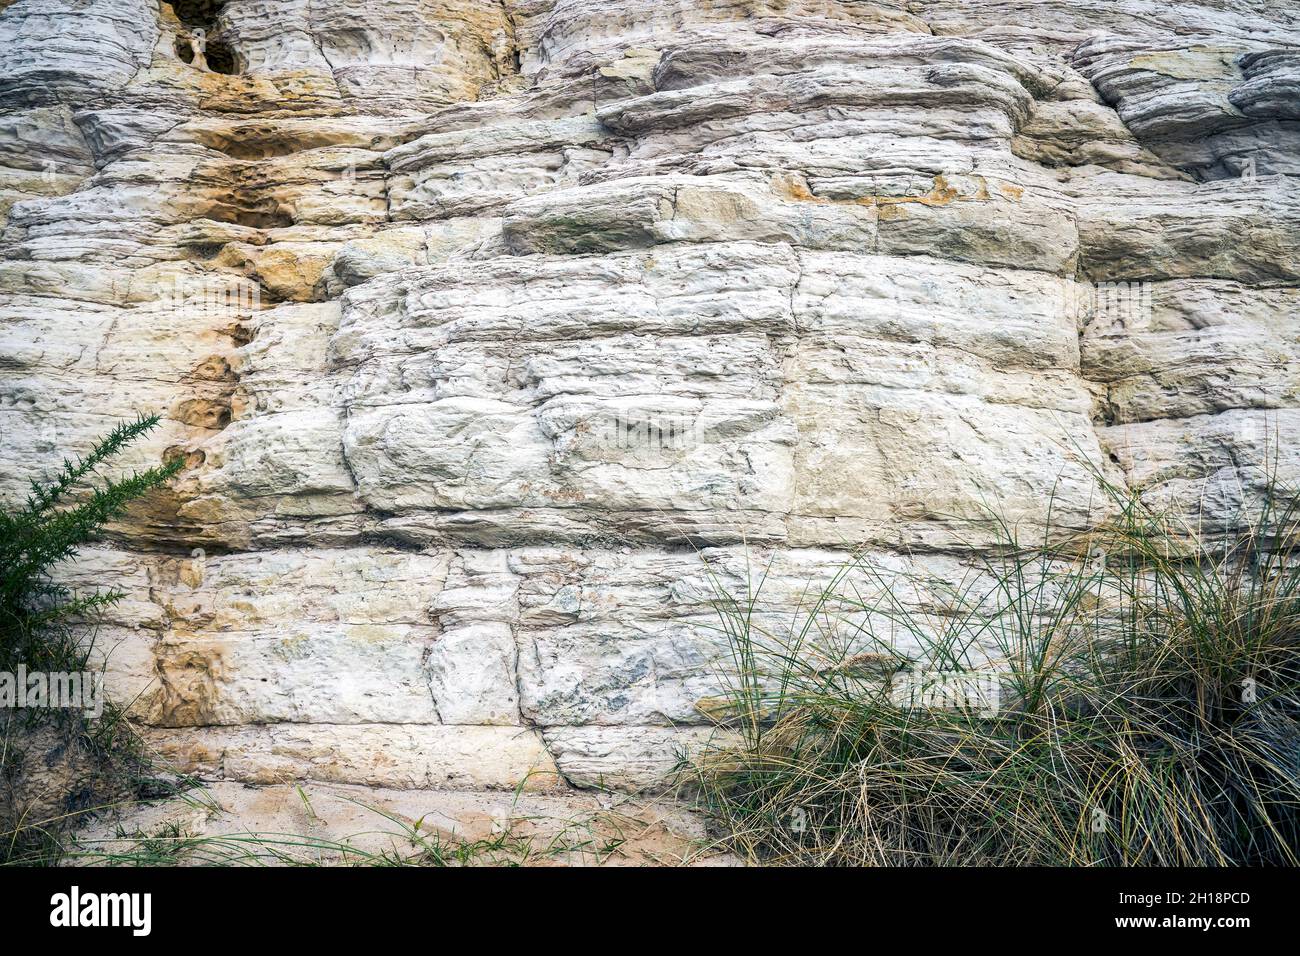 Capas de piedra arenisca formadas durante el período Eoceno que conforman el acantilado este en Bournemouth en Dorset Reino Unido Foto de stock